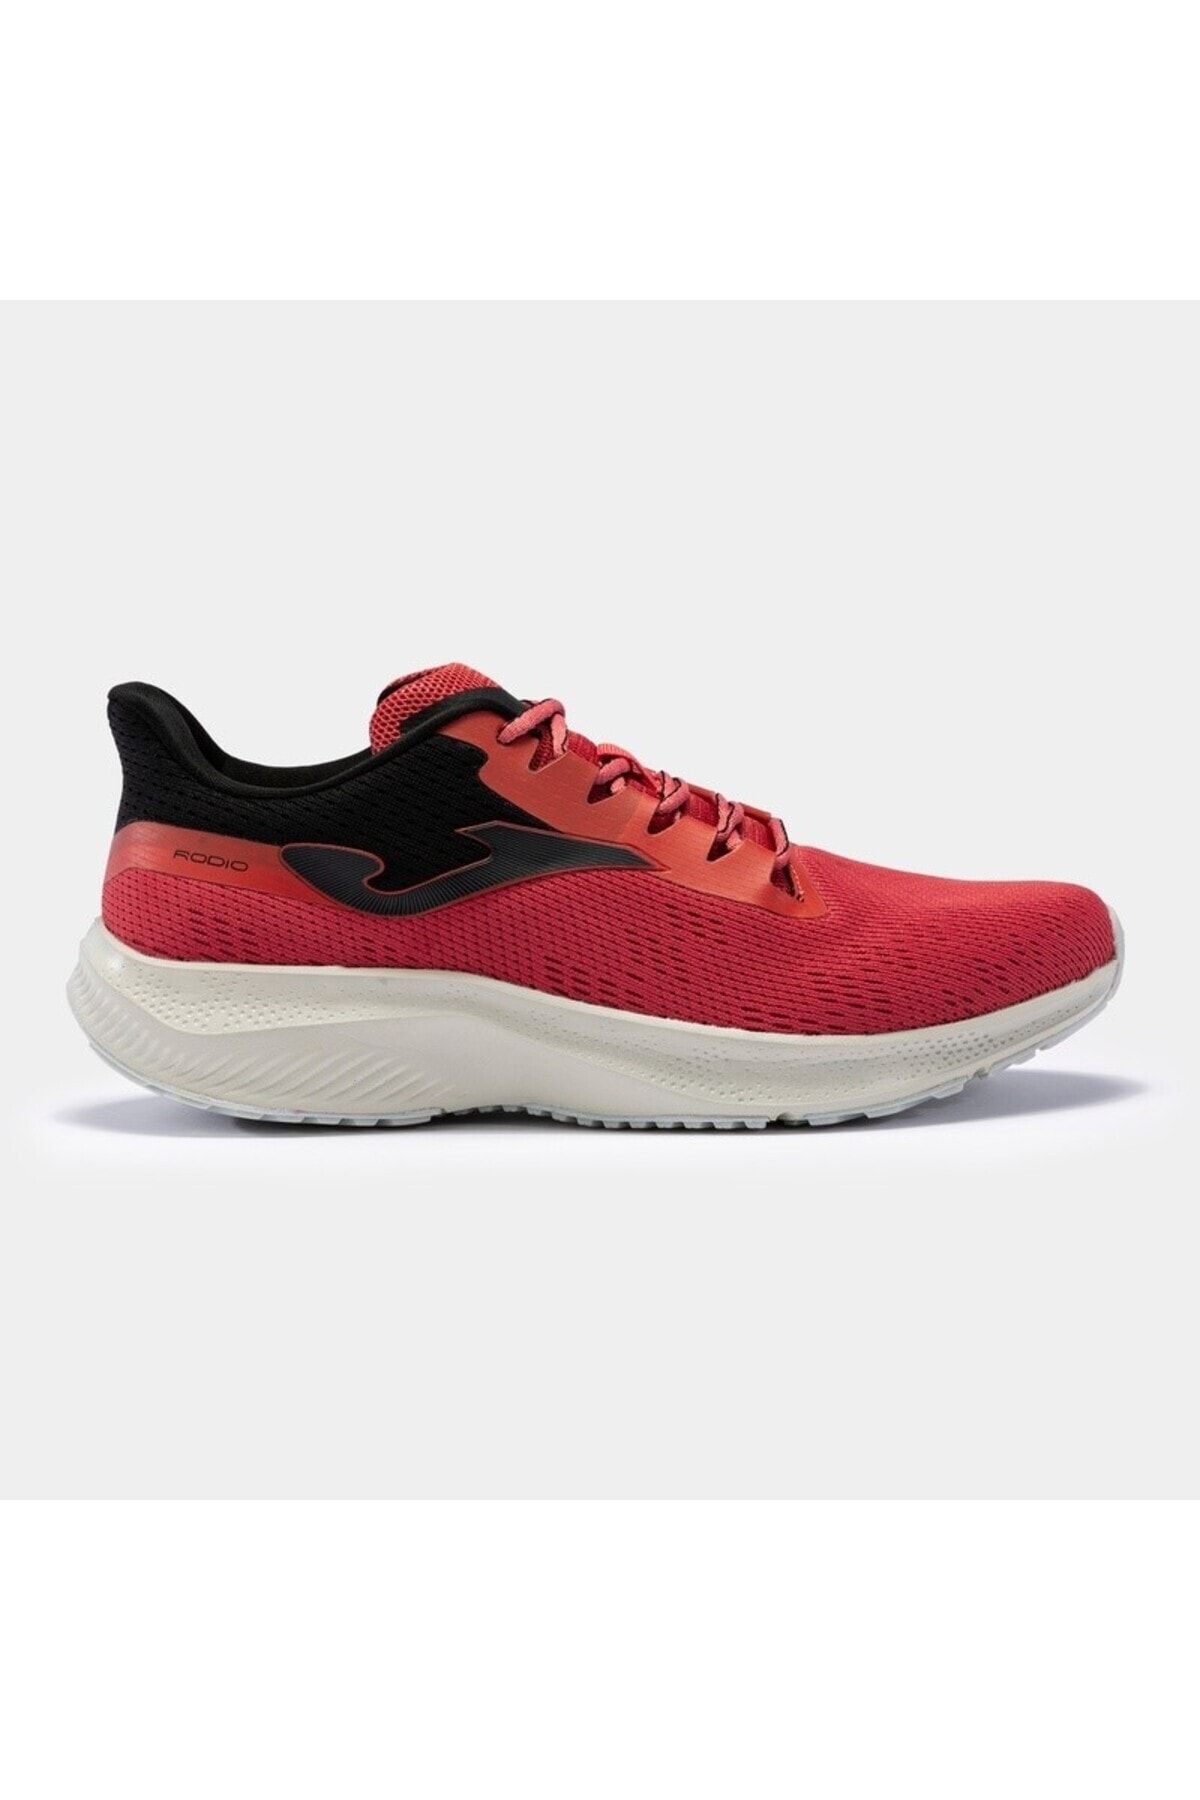 Joma Erkek Koşu Ayakkabısı R.rodıo 2306 Red Black Koşu & Yürüyüş Ayakkabısı